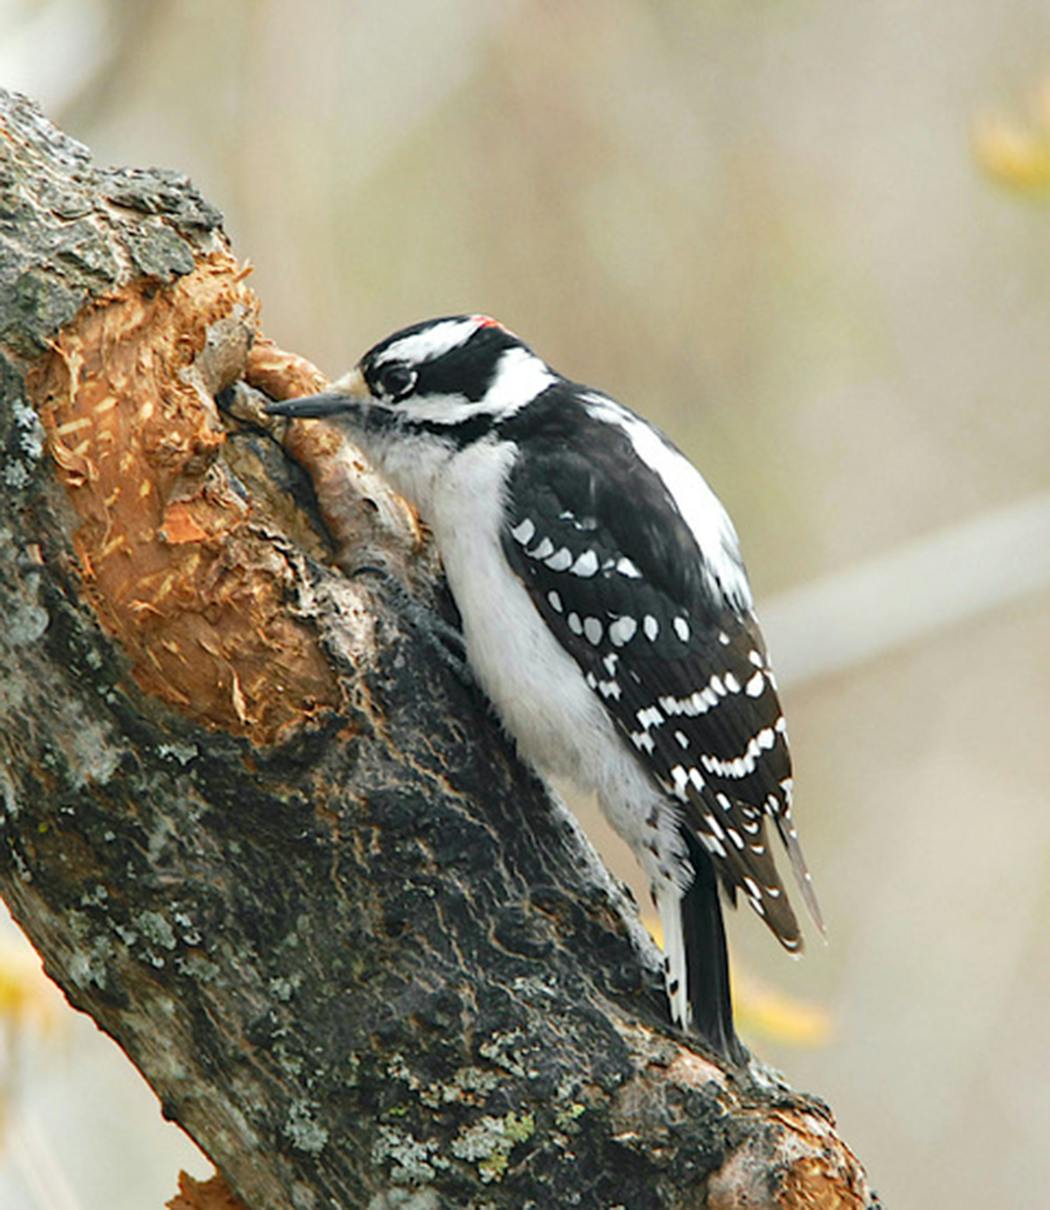 A downy woodpecker probes tree bark.